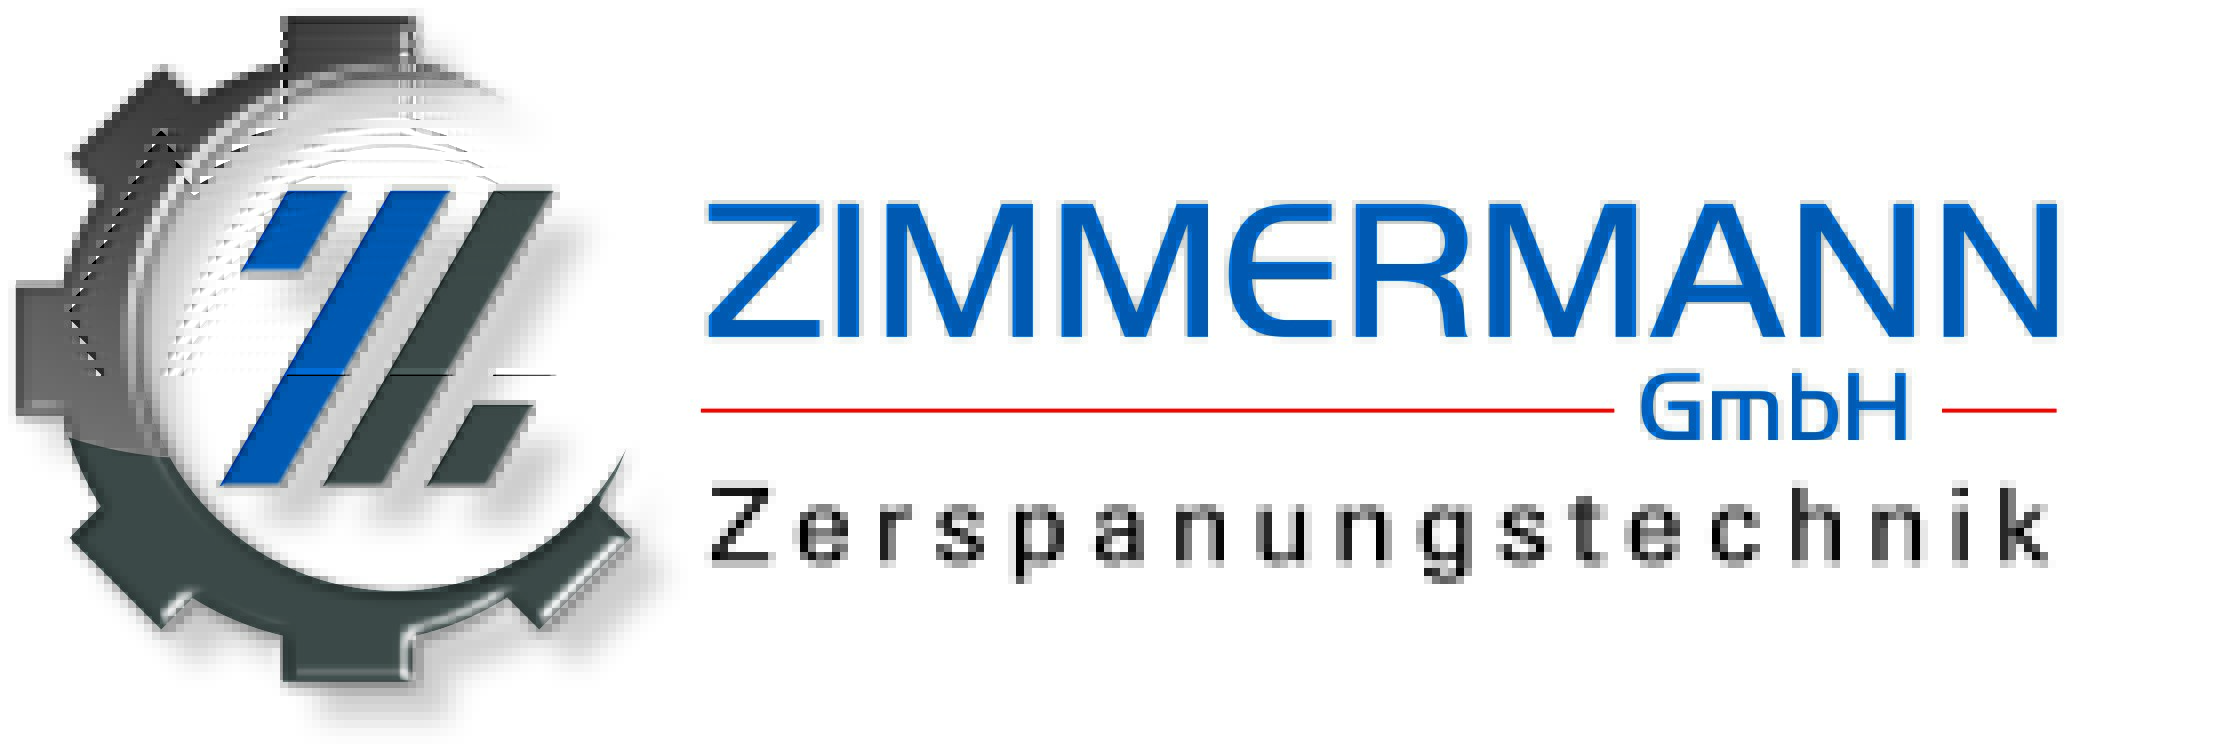 Bernhard Zimmermann GmbH